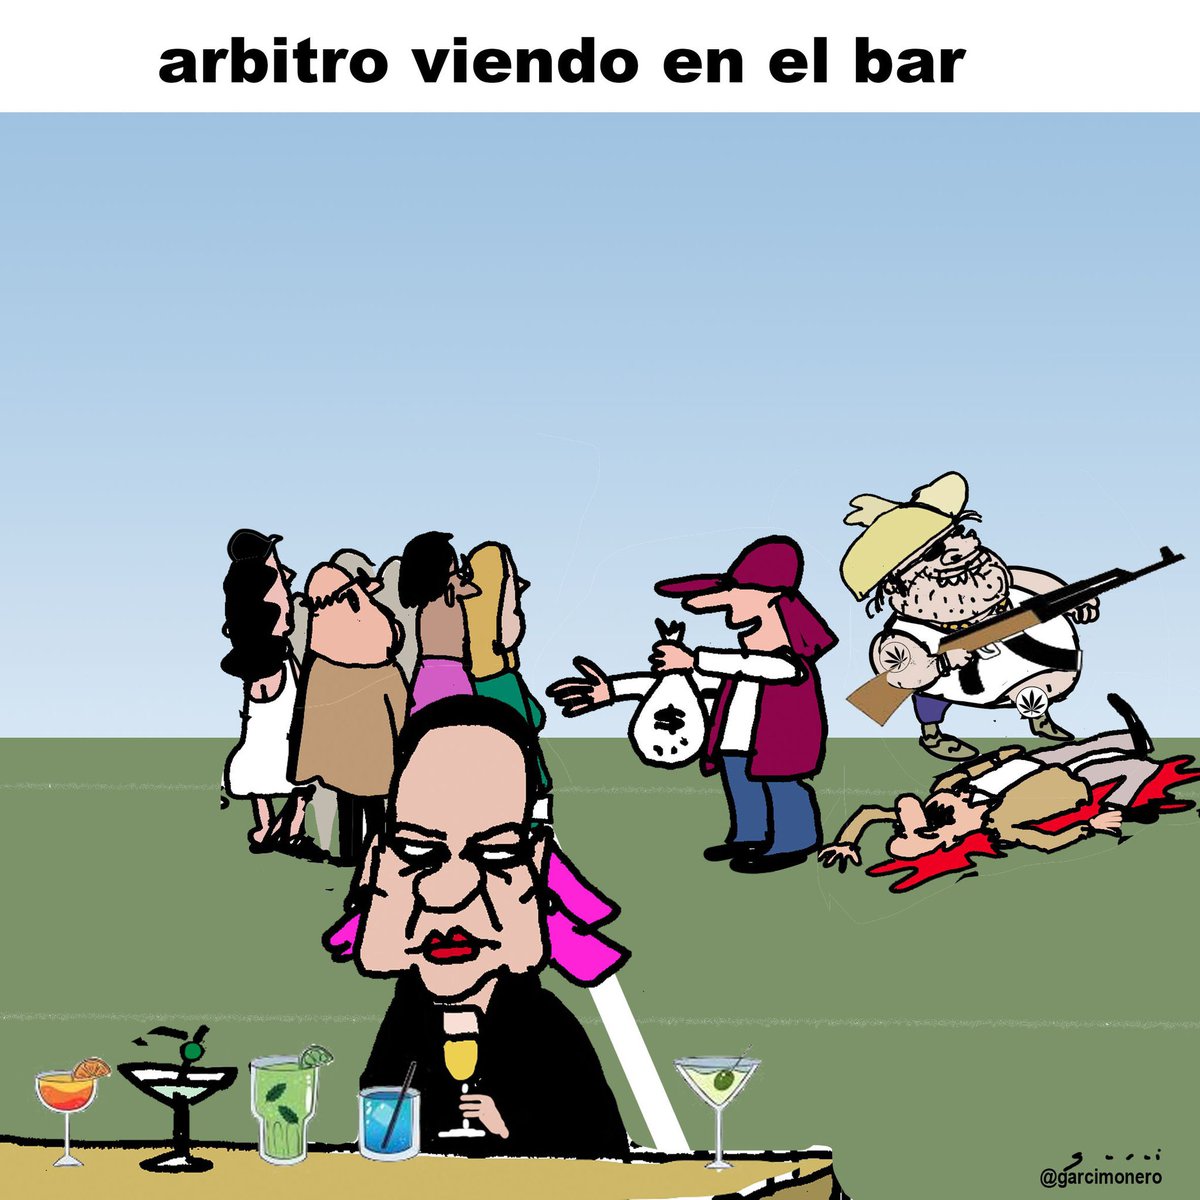 📰 Árbitro viendo en el bar (@Garcimonero) #FelizMartes